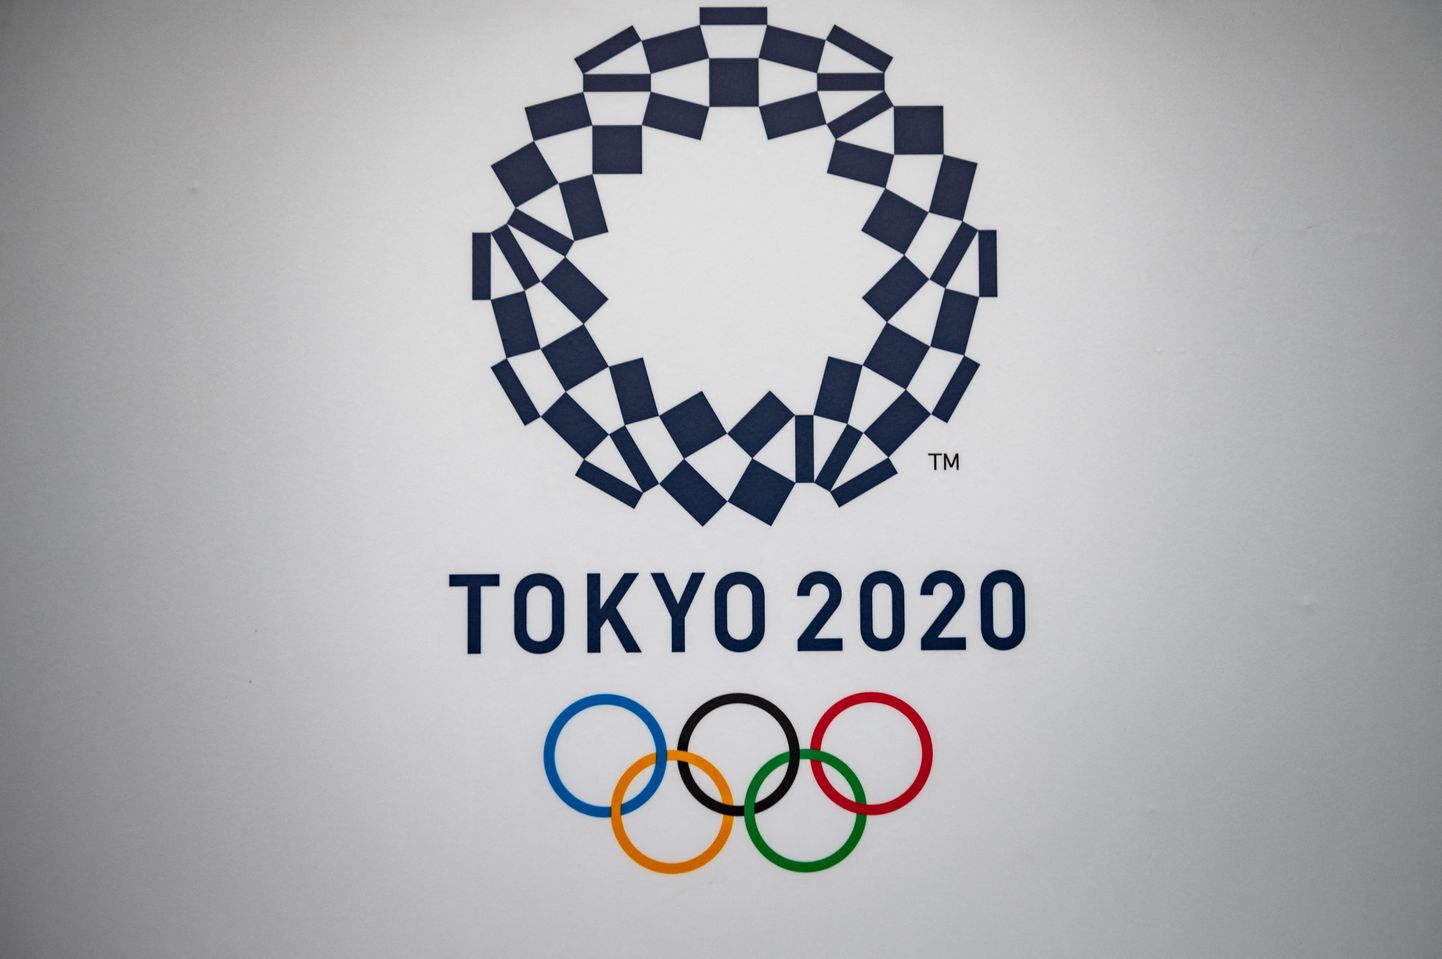 Олимпиада в Токио должна была пройти с 24 июля по 9 августа 2020 года. Из-за пандемии коронавируса соревнования были перенесены на год и теперь состоятся с 23 июля по 8 августа 2021 года.